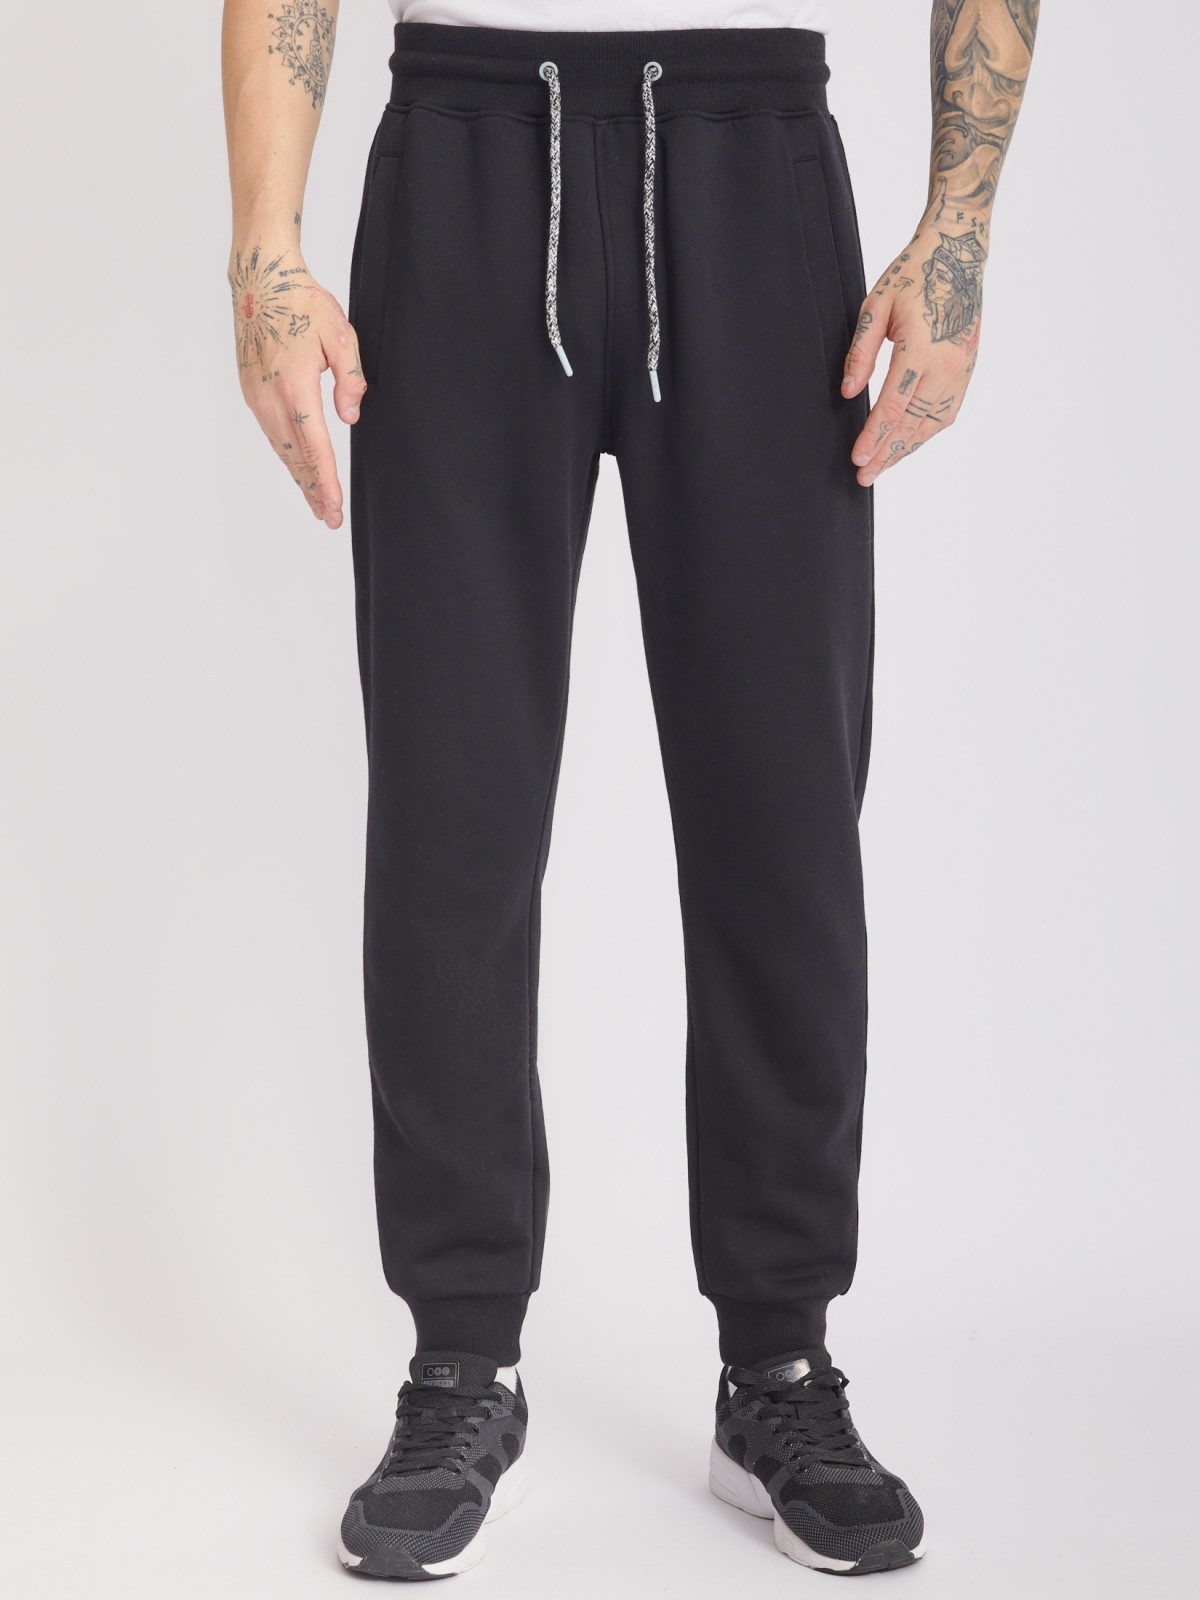 Утеплённые трикотажные брюки-джоггеры в спортивном стиле zolla 213337675022, цвет черный, размер M - фото 2